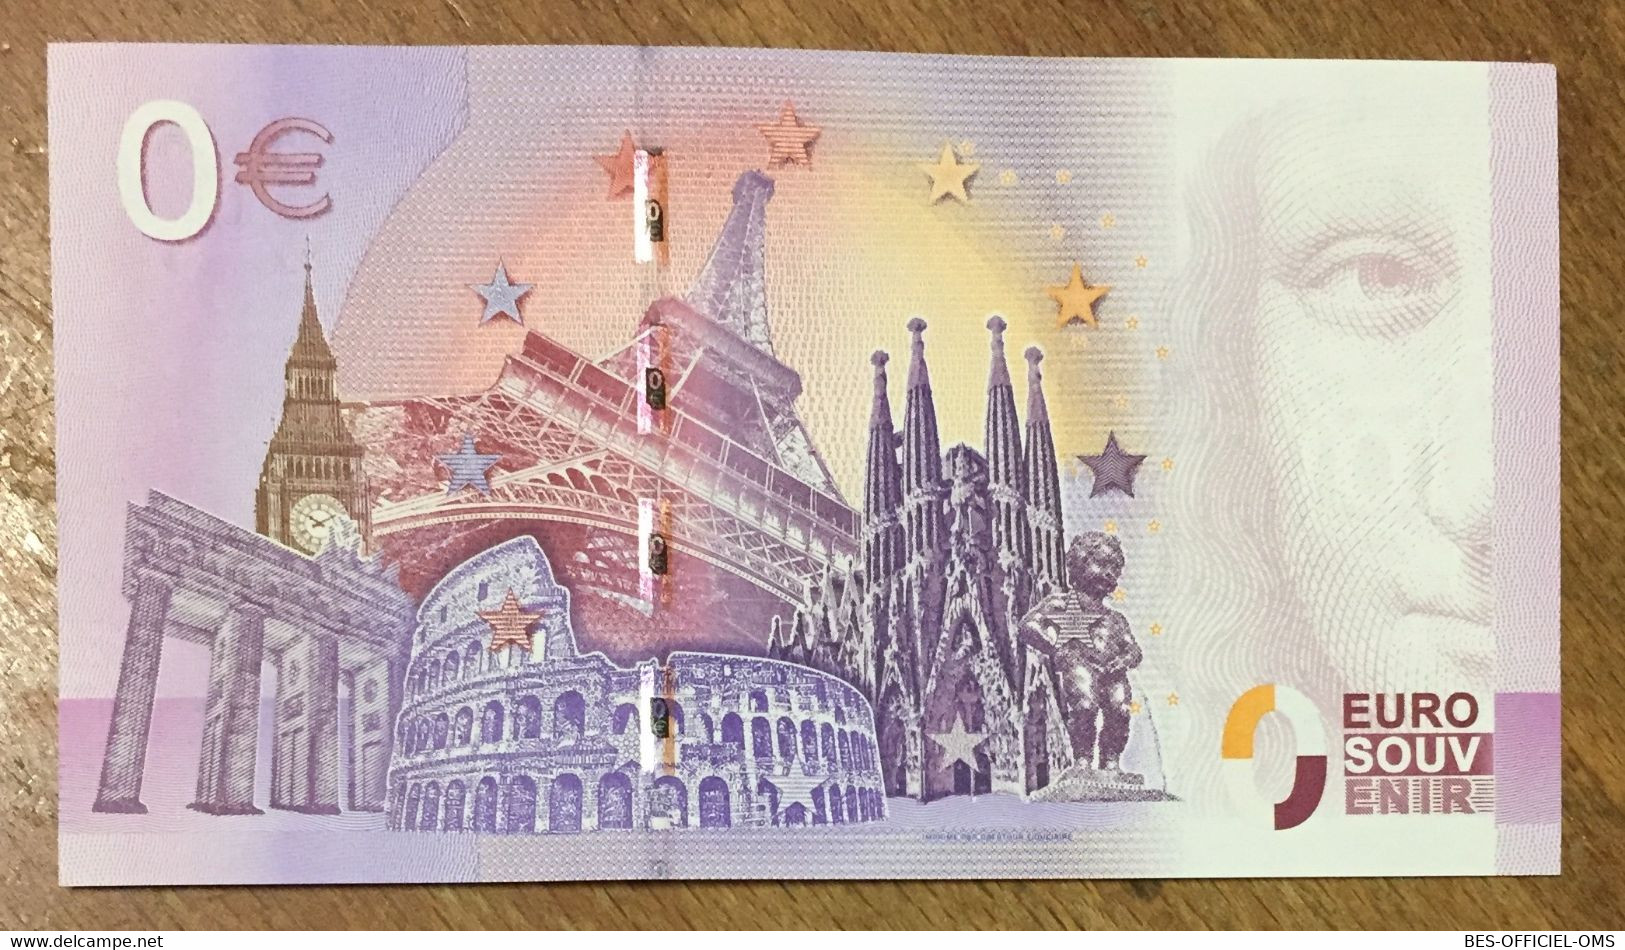 2017 BILLET 0 EURO SOUVENIR ALLEMAGNE DEUTSCHLAND EUROPA PARK ZERO 0 EURO SCHEIN BANKNOTE PAPER MONEY - [17] Fakes & Specimens